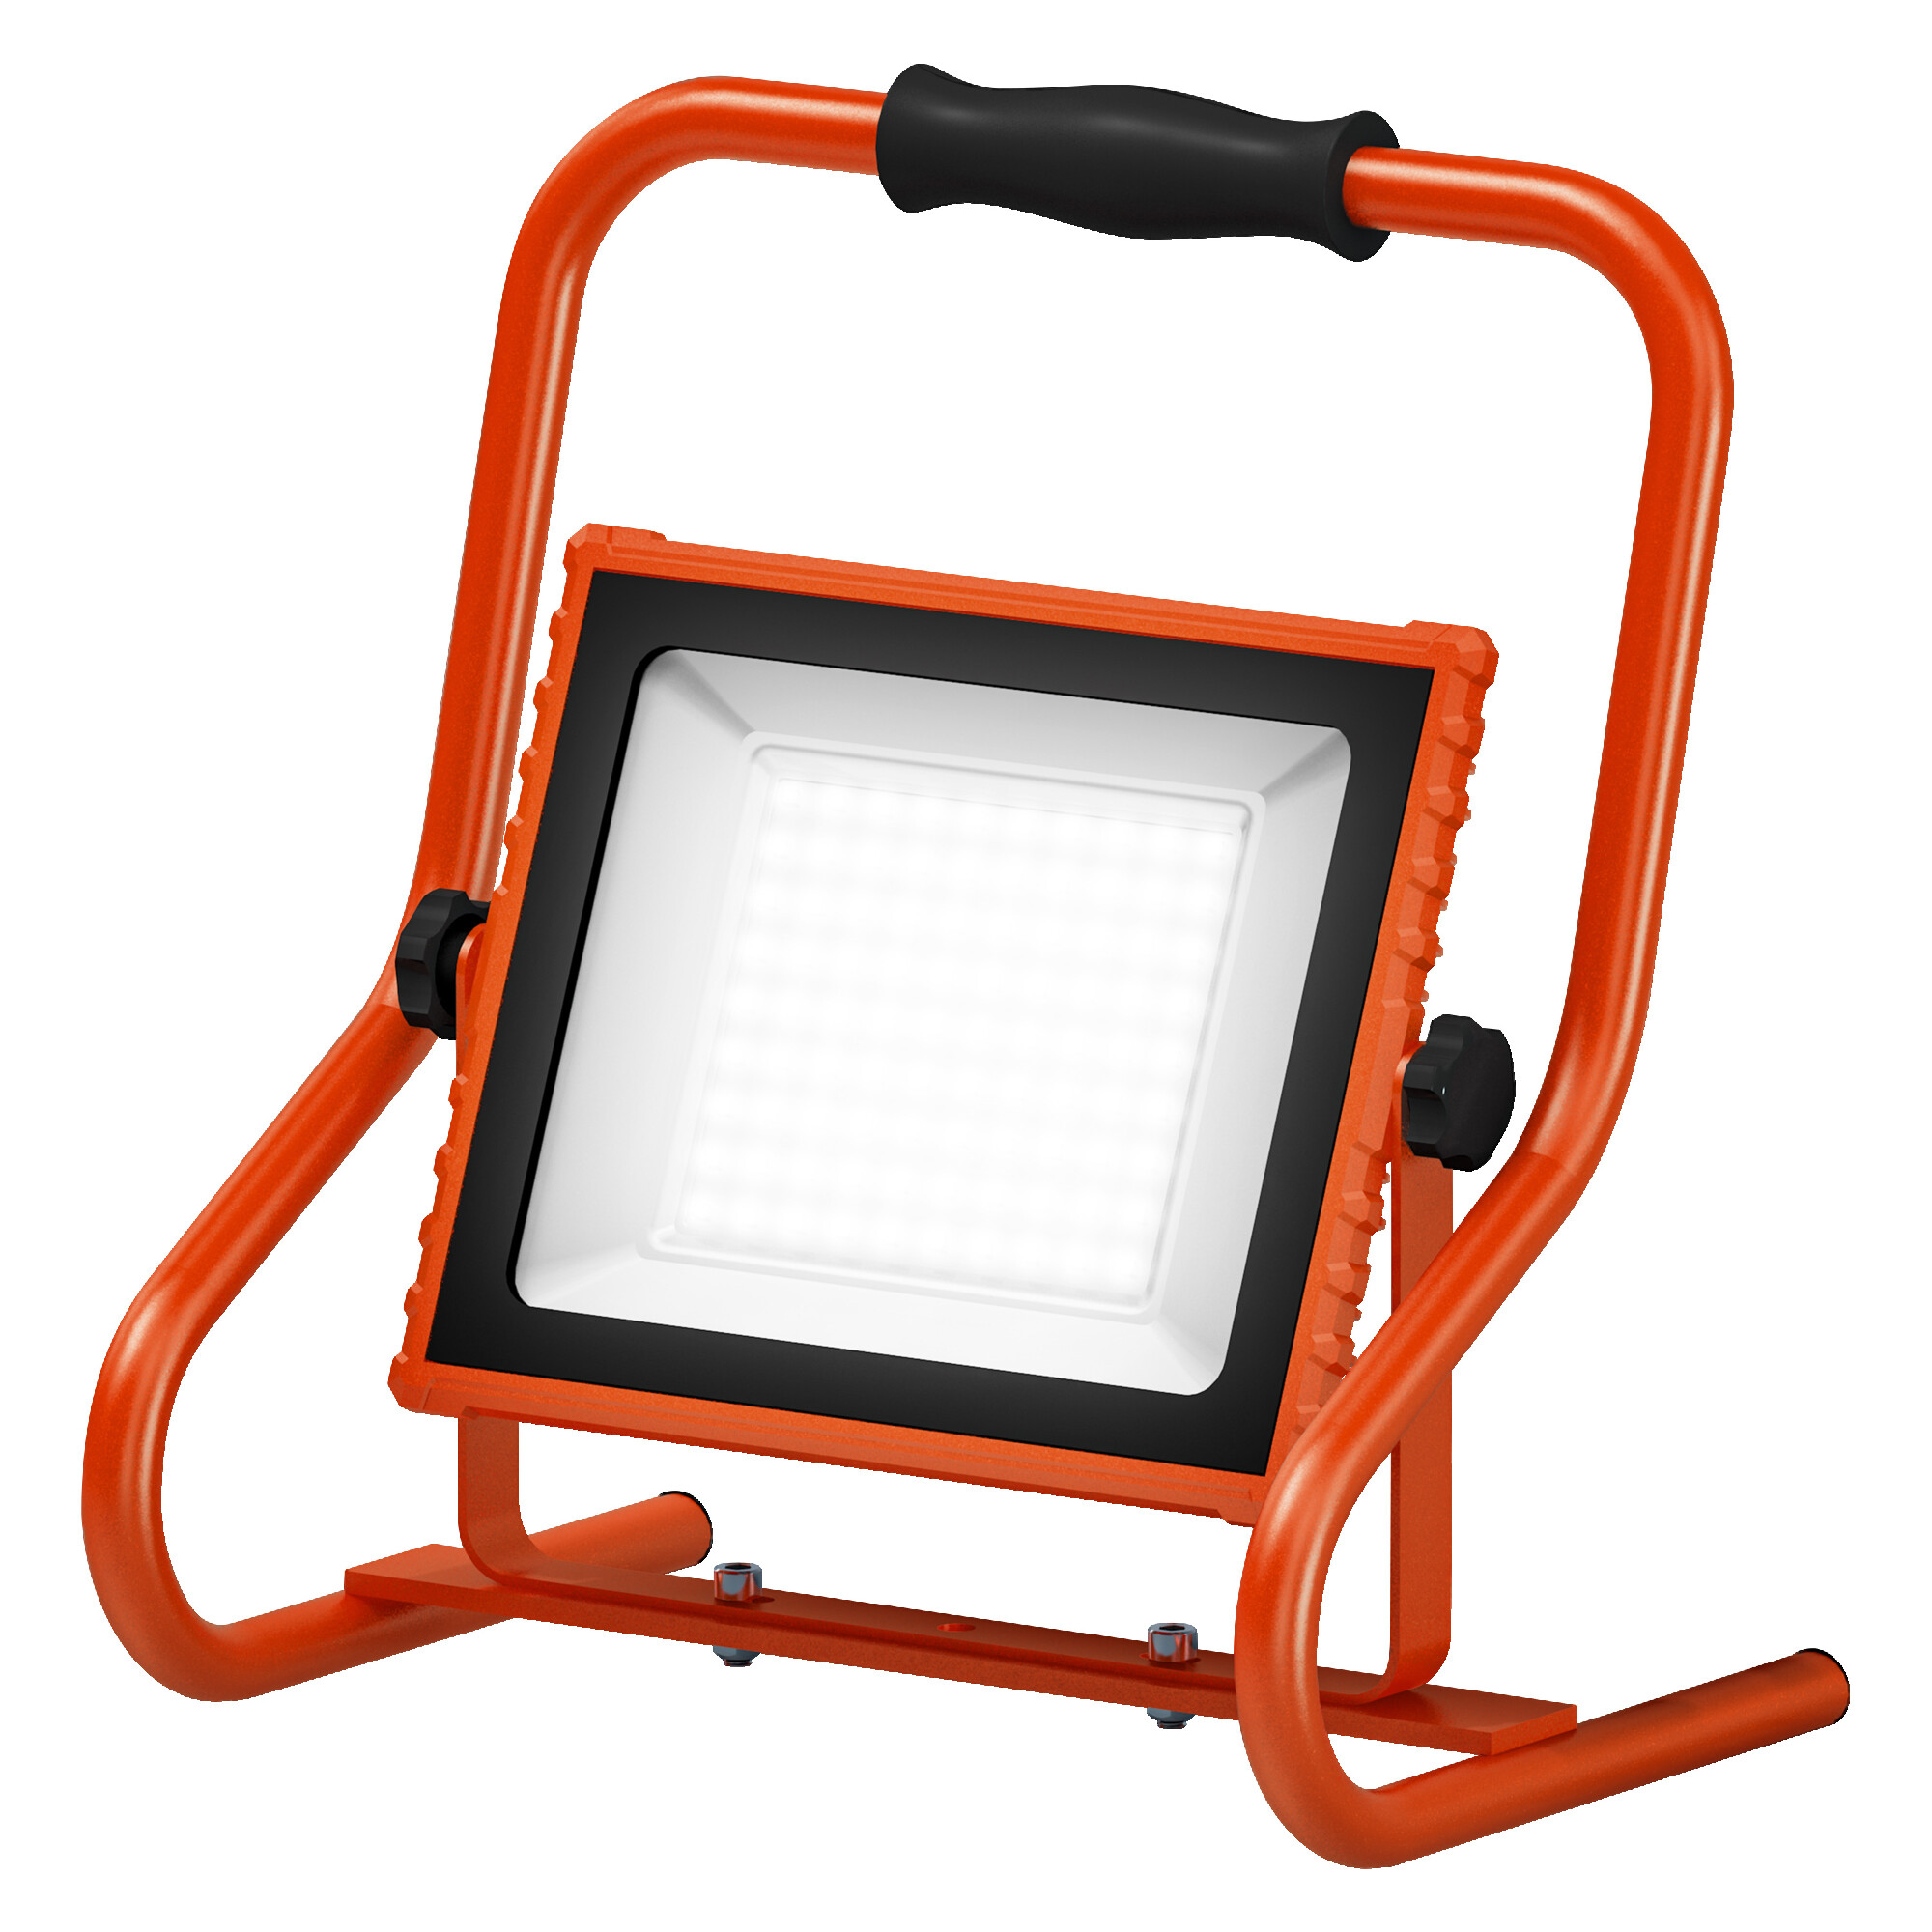 LED-Baustrahler 'Worklights' orange 2400 lm IP 44 + product picture